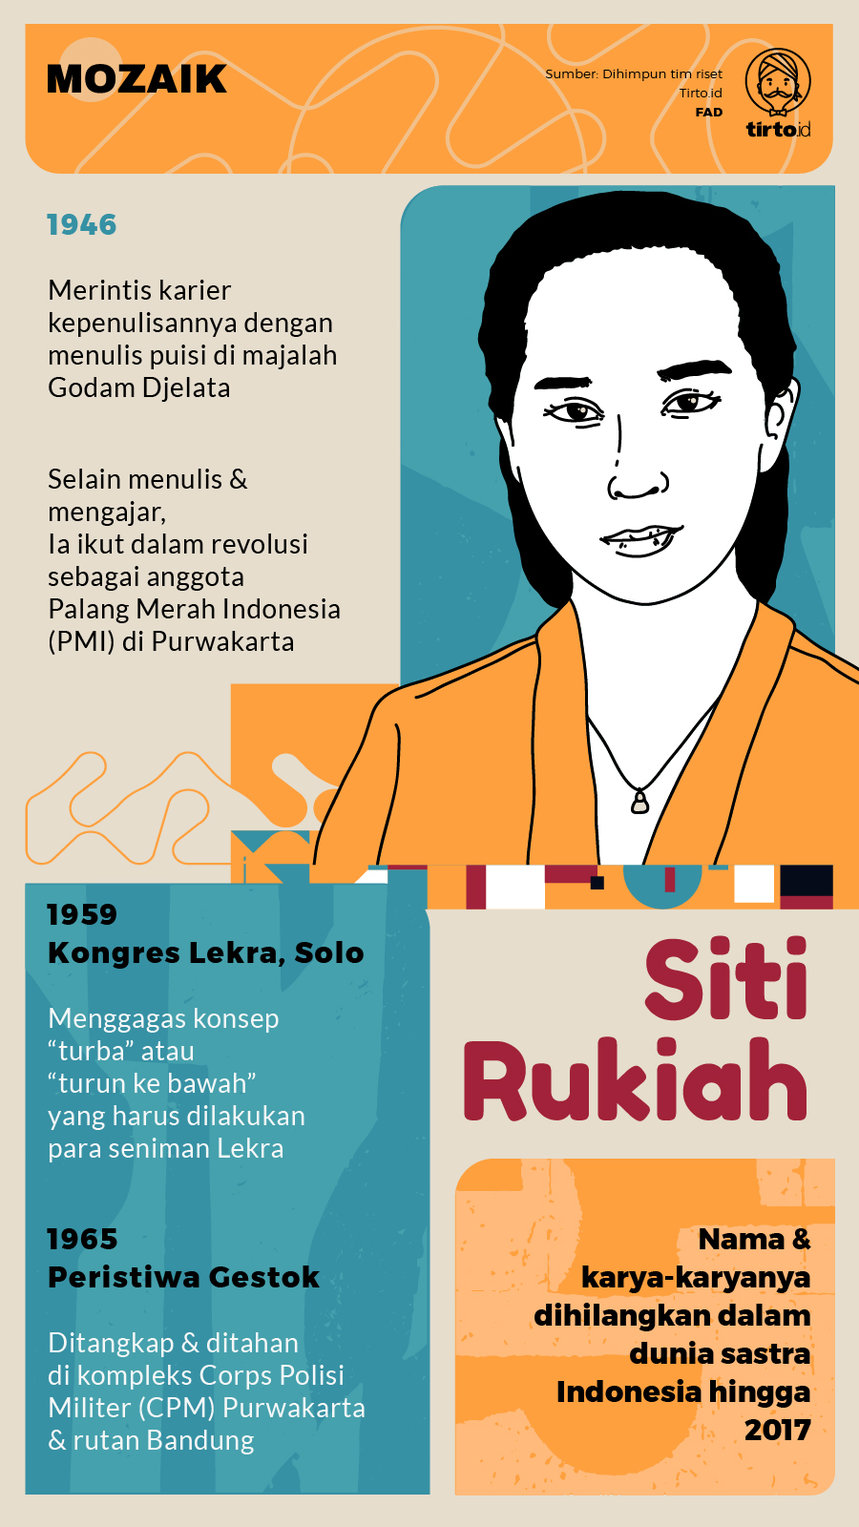 Infografik Mozaik Siti Rukiah